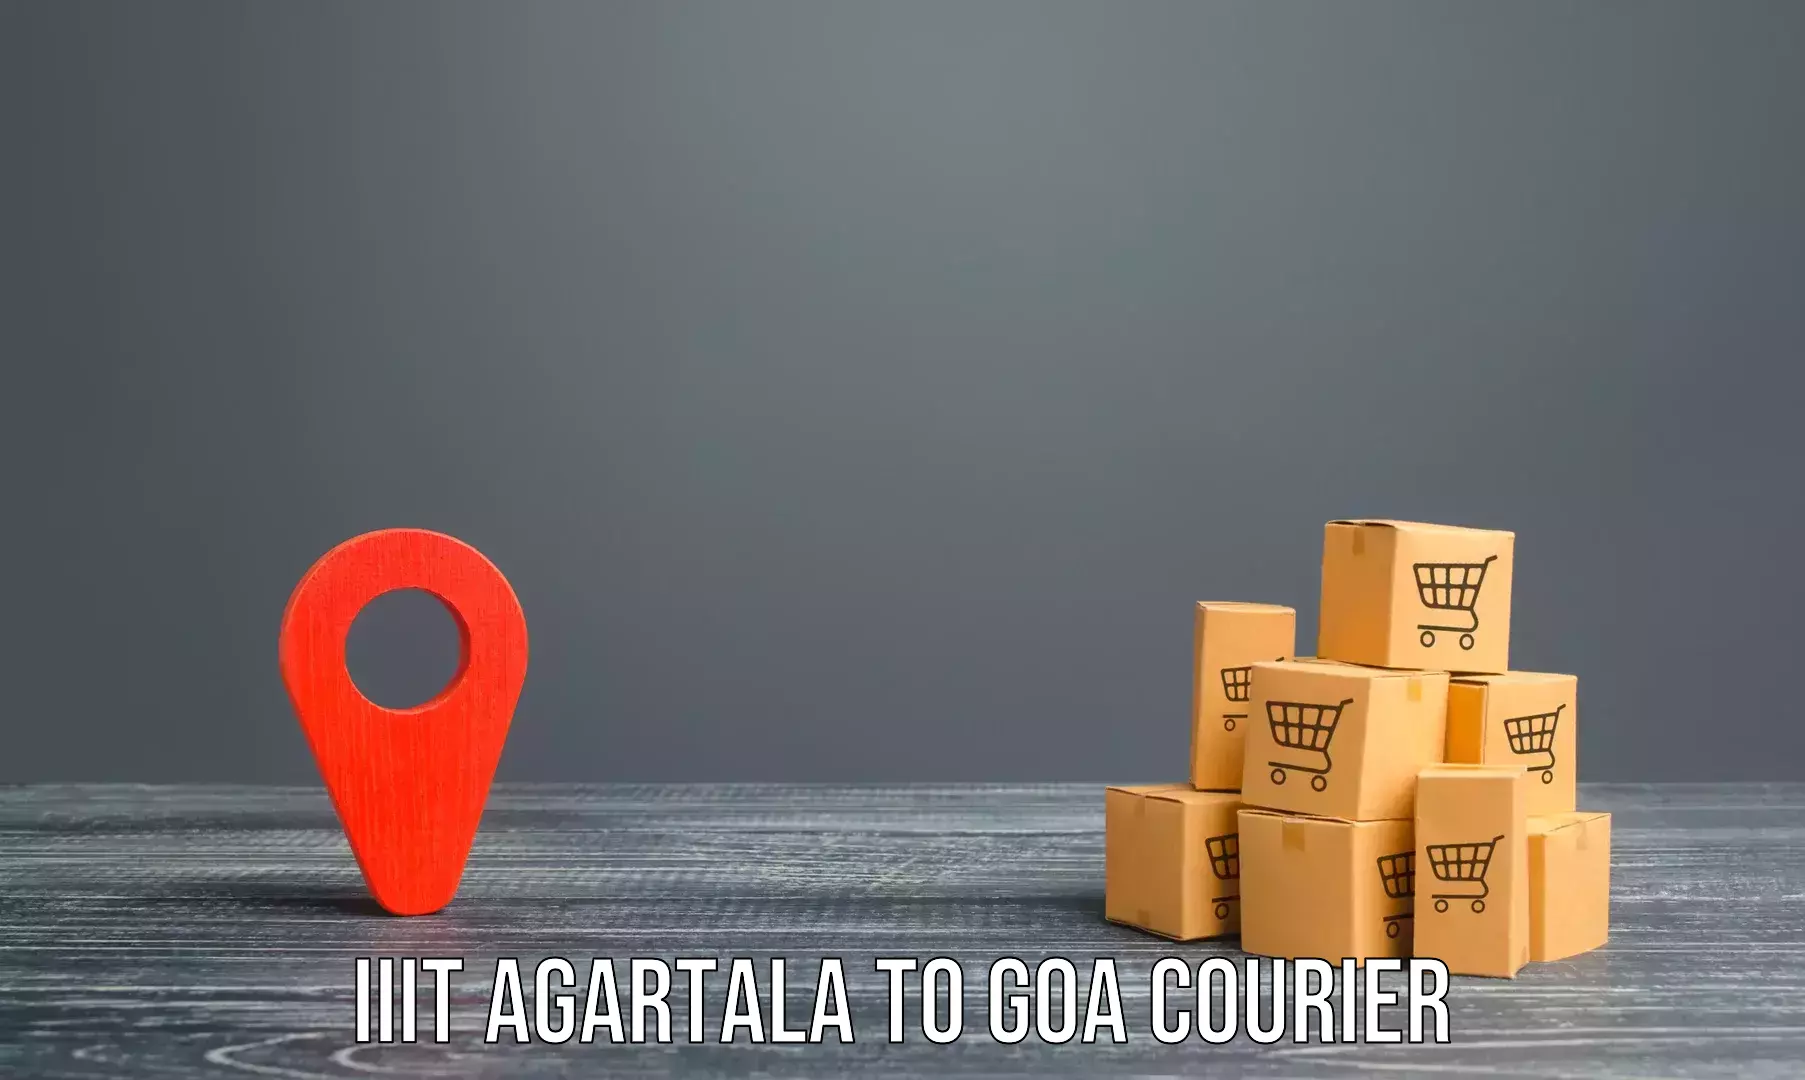 Expert goods movers IIIT Agartala to Goa University